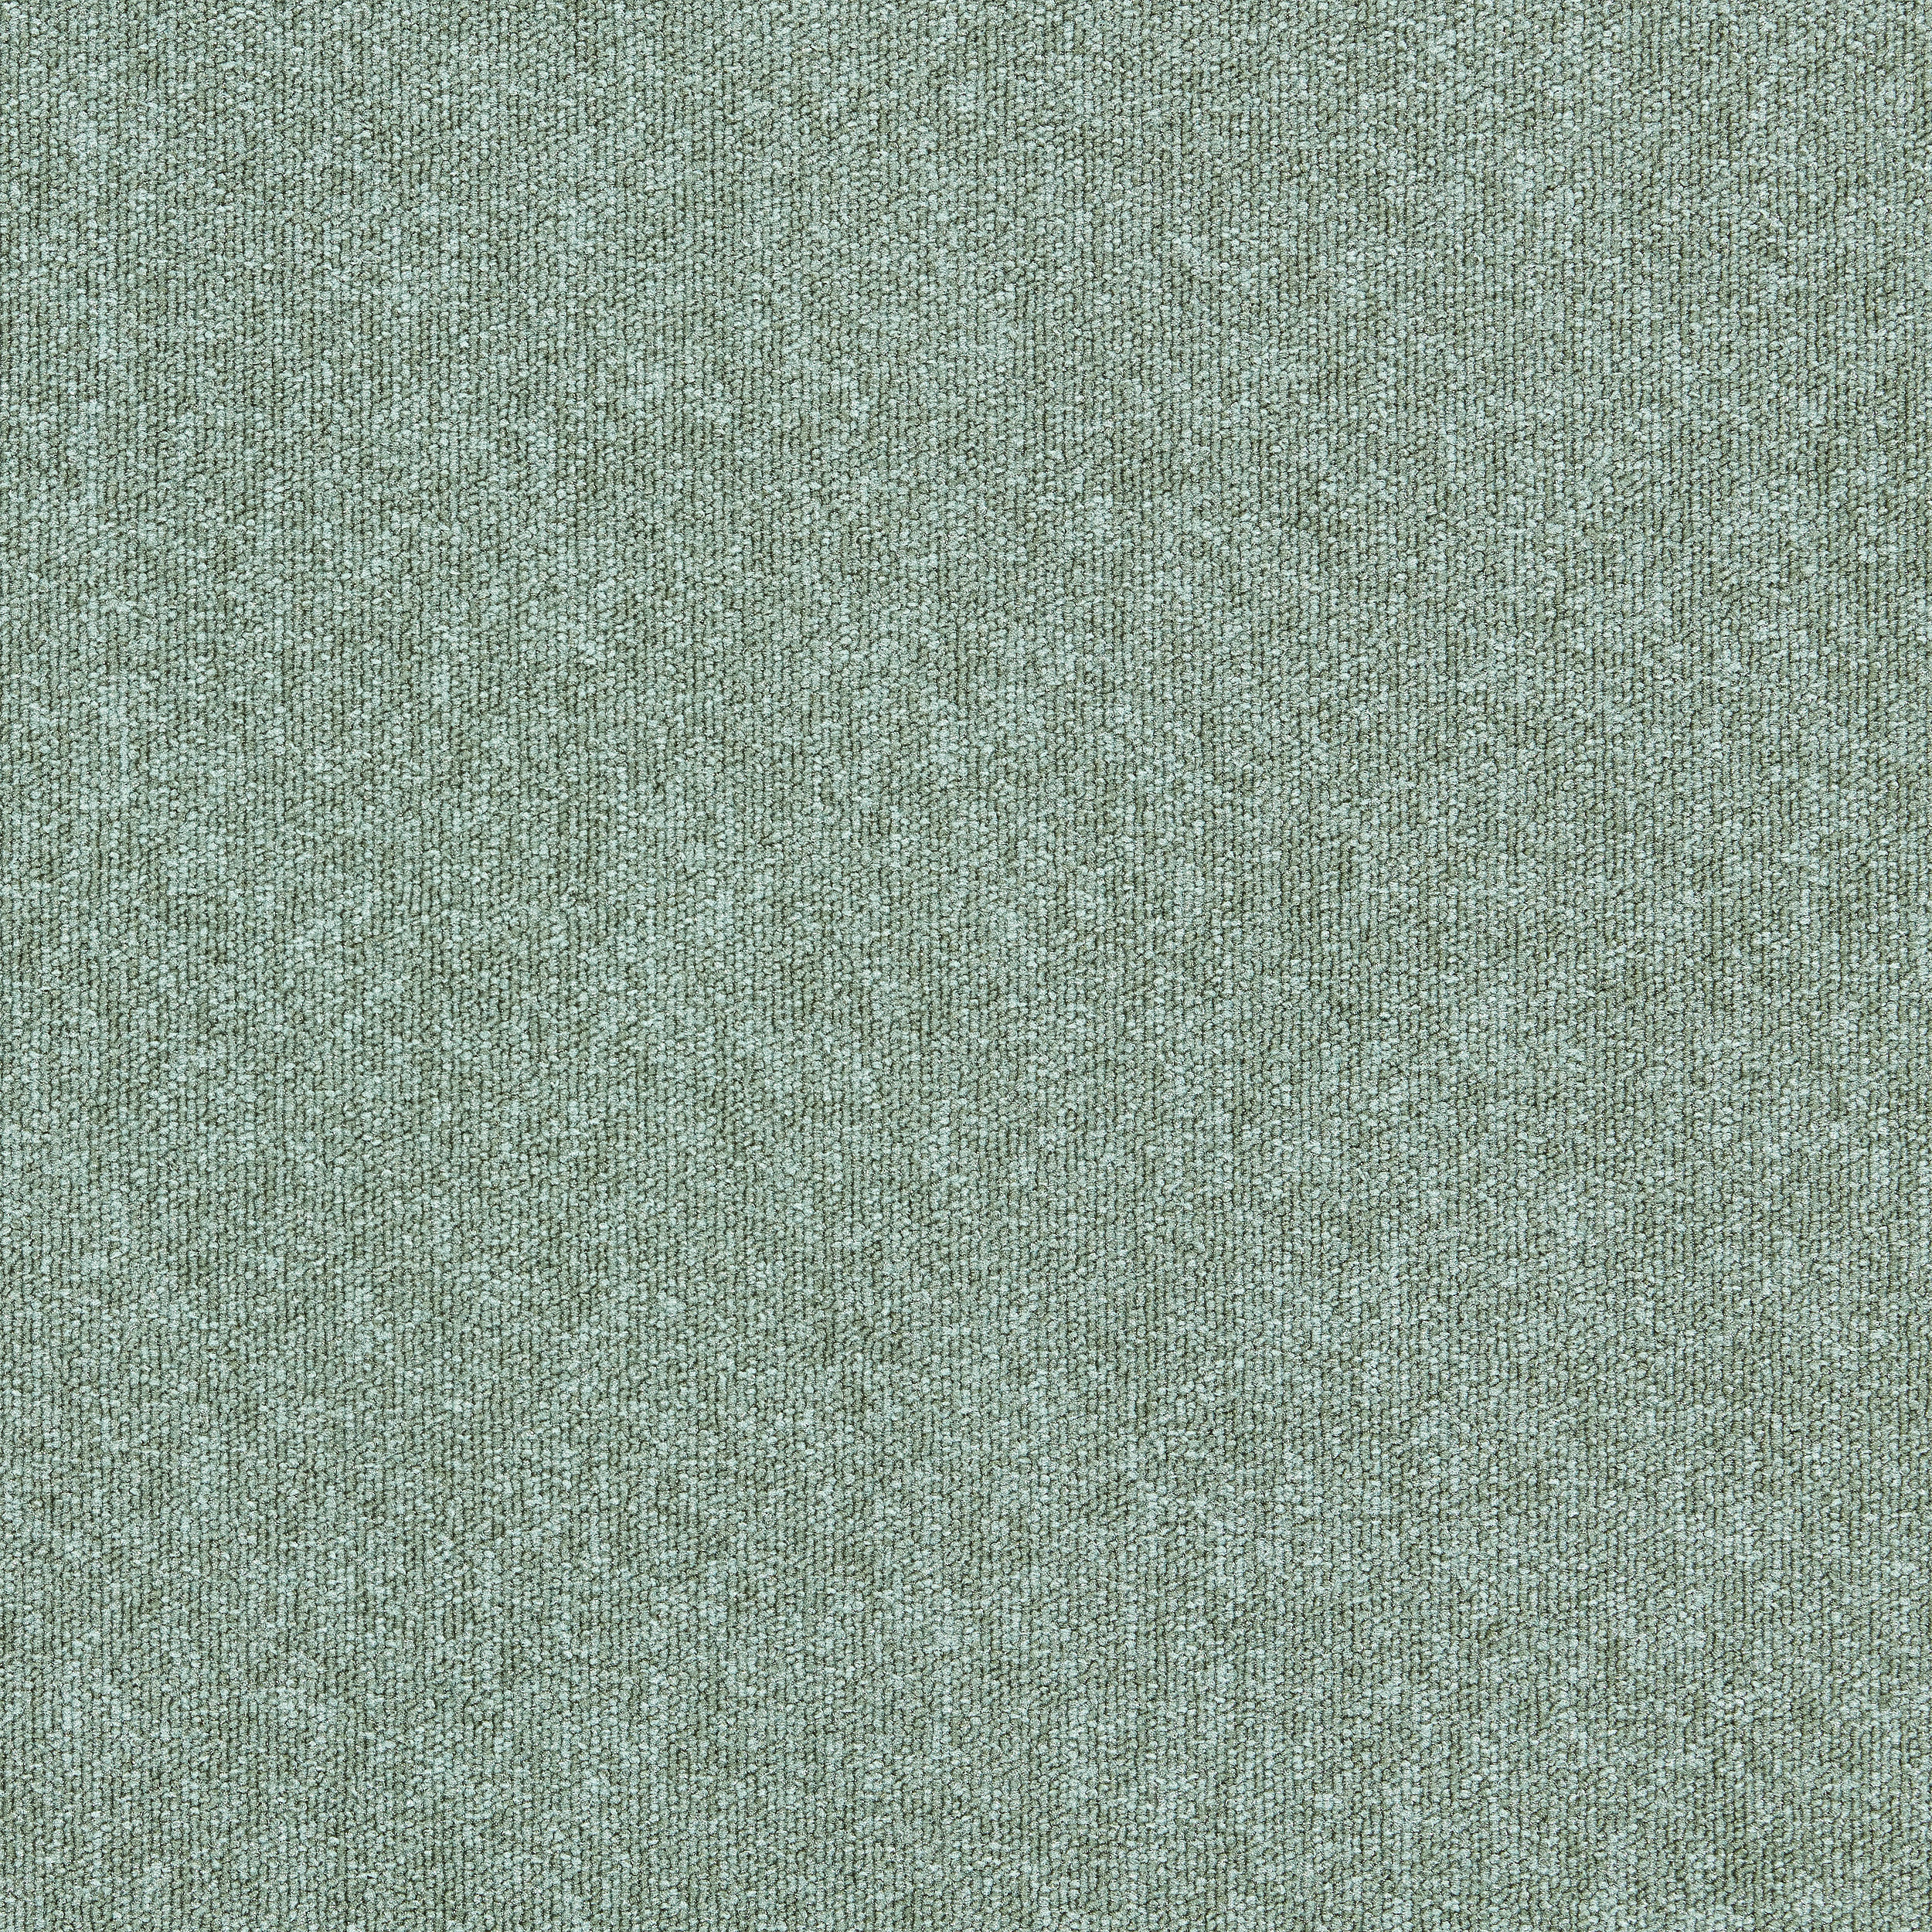 Heuga 580 II carpet tile in Laurel número de imagen 6